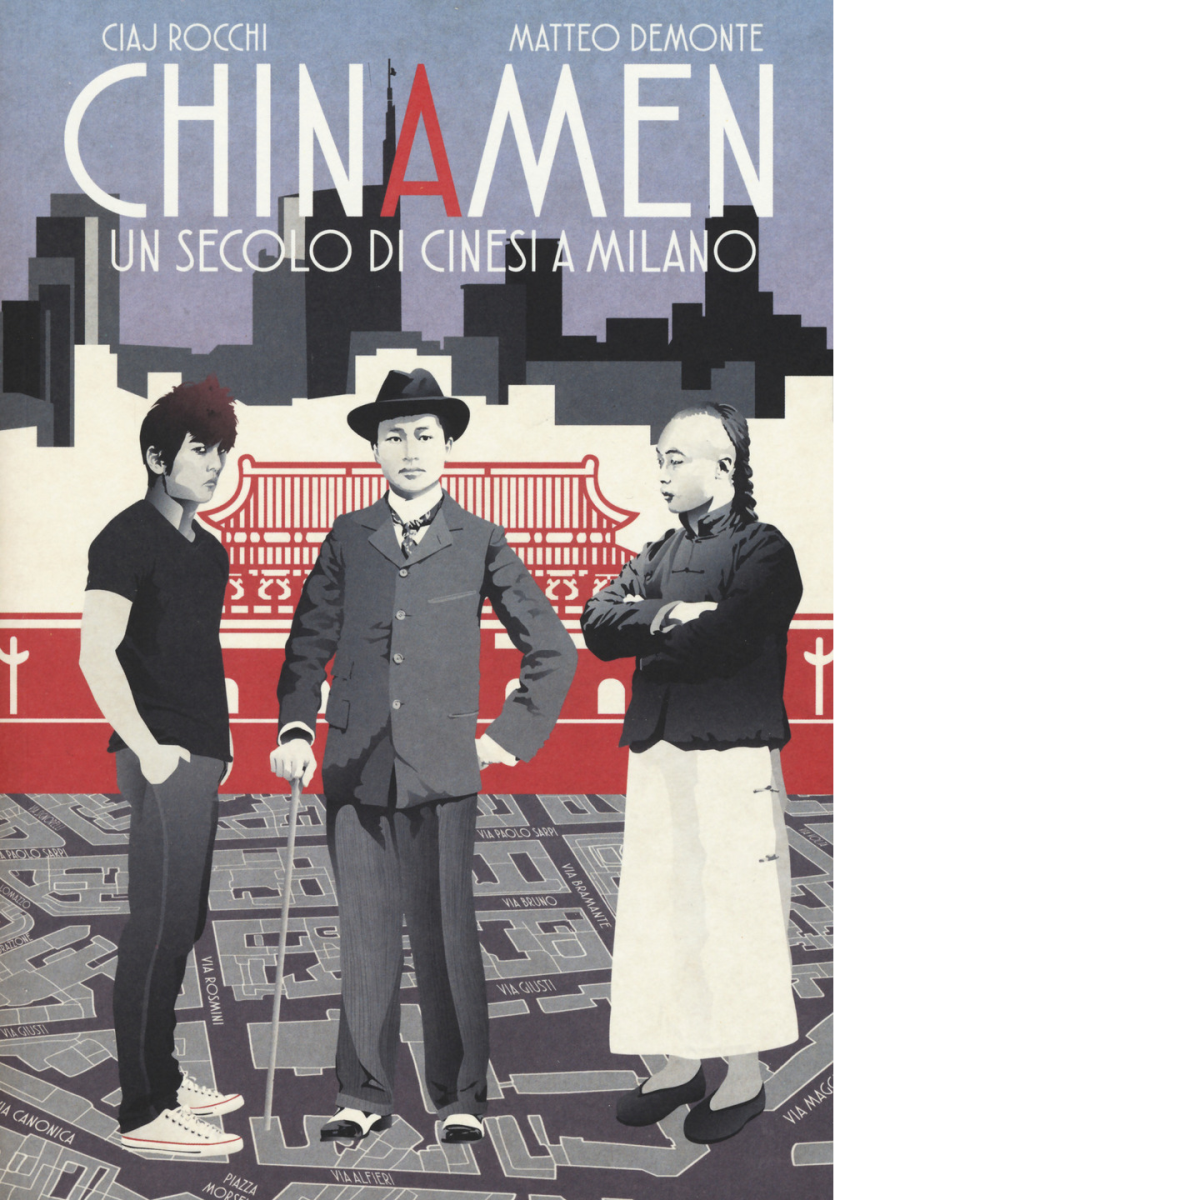 Chinamen. Un secolo di cinesi a Milano di Matteo Demonte, …